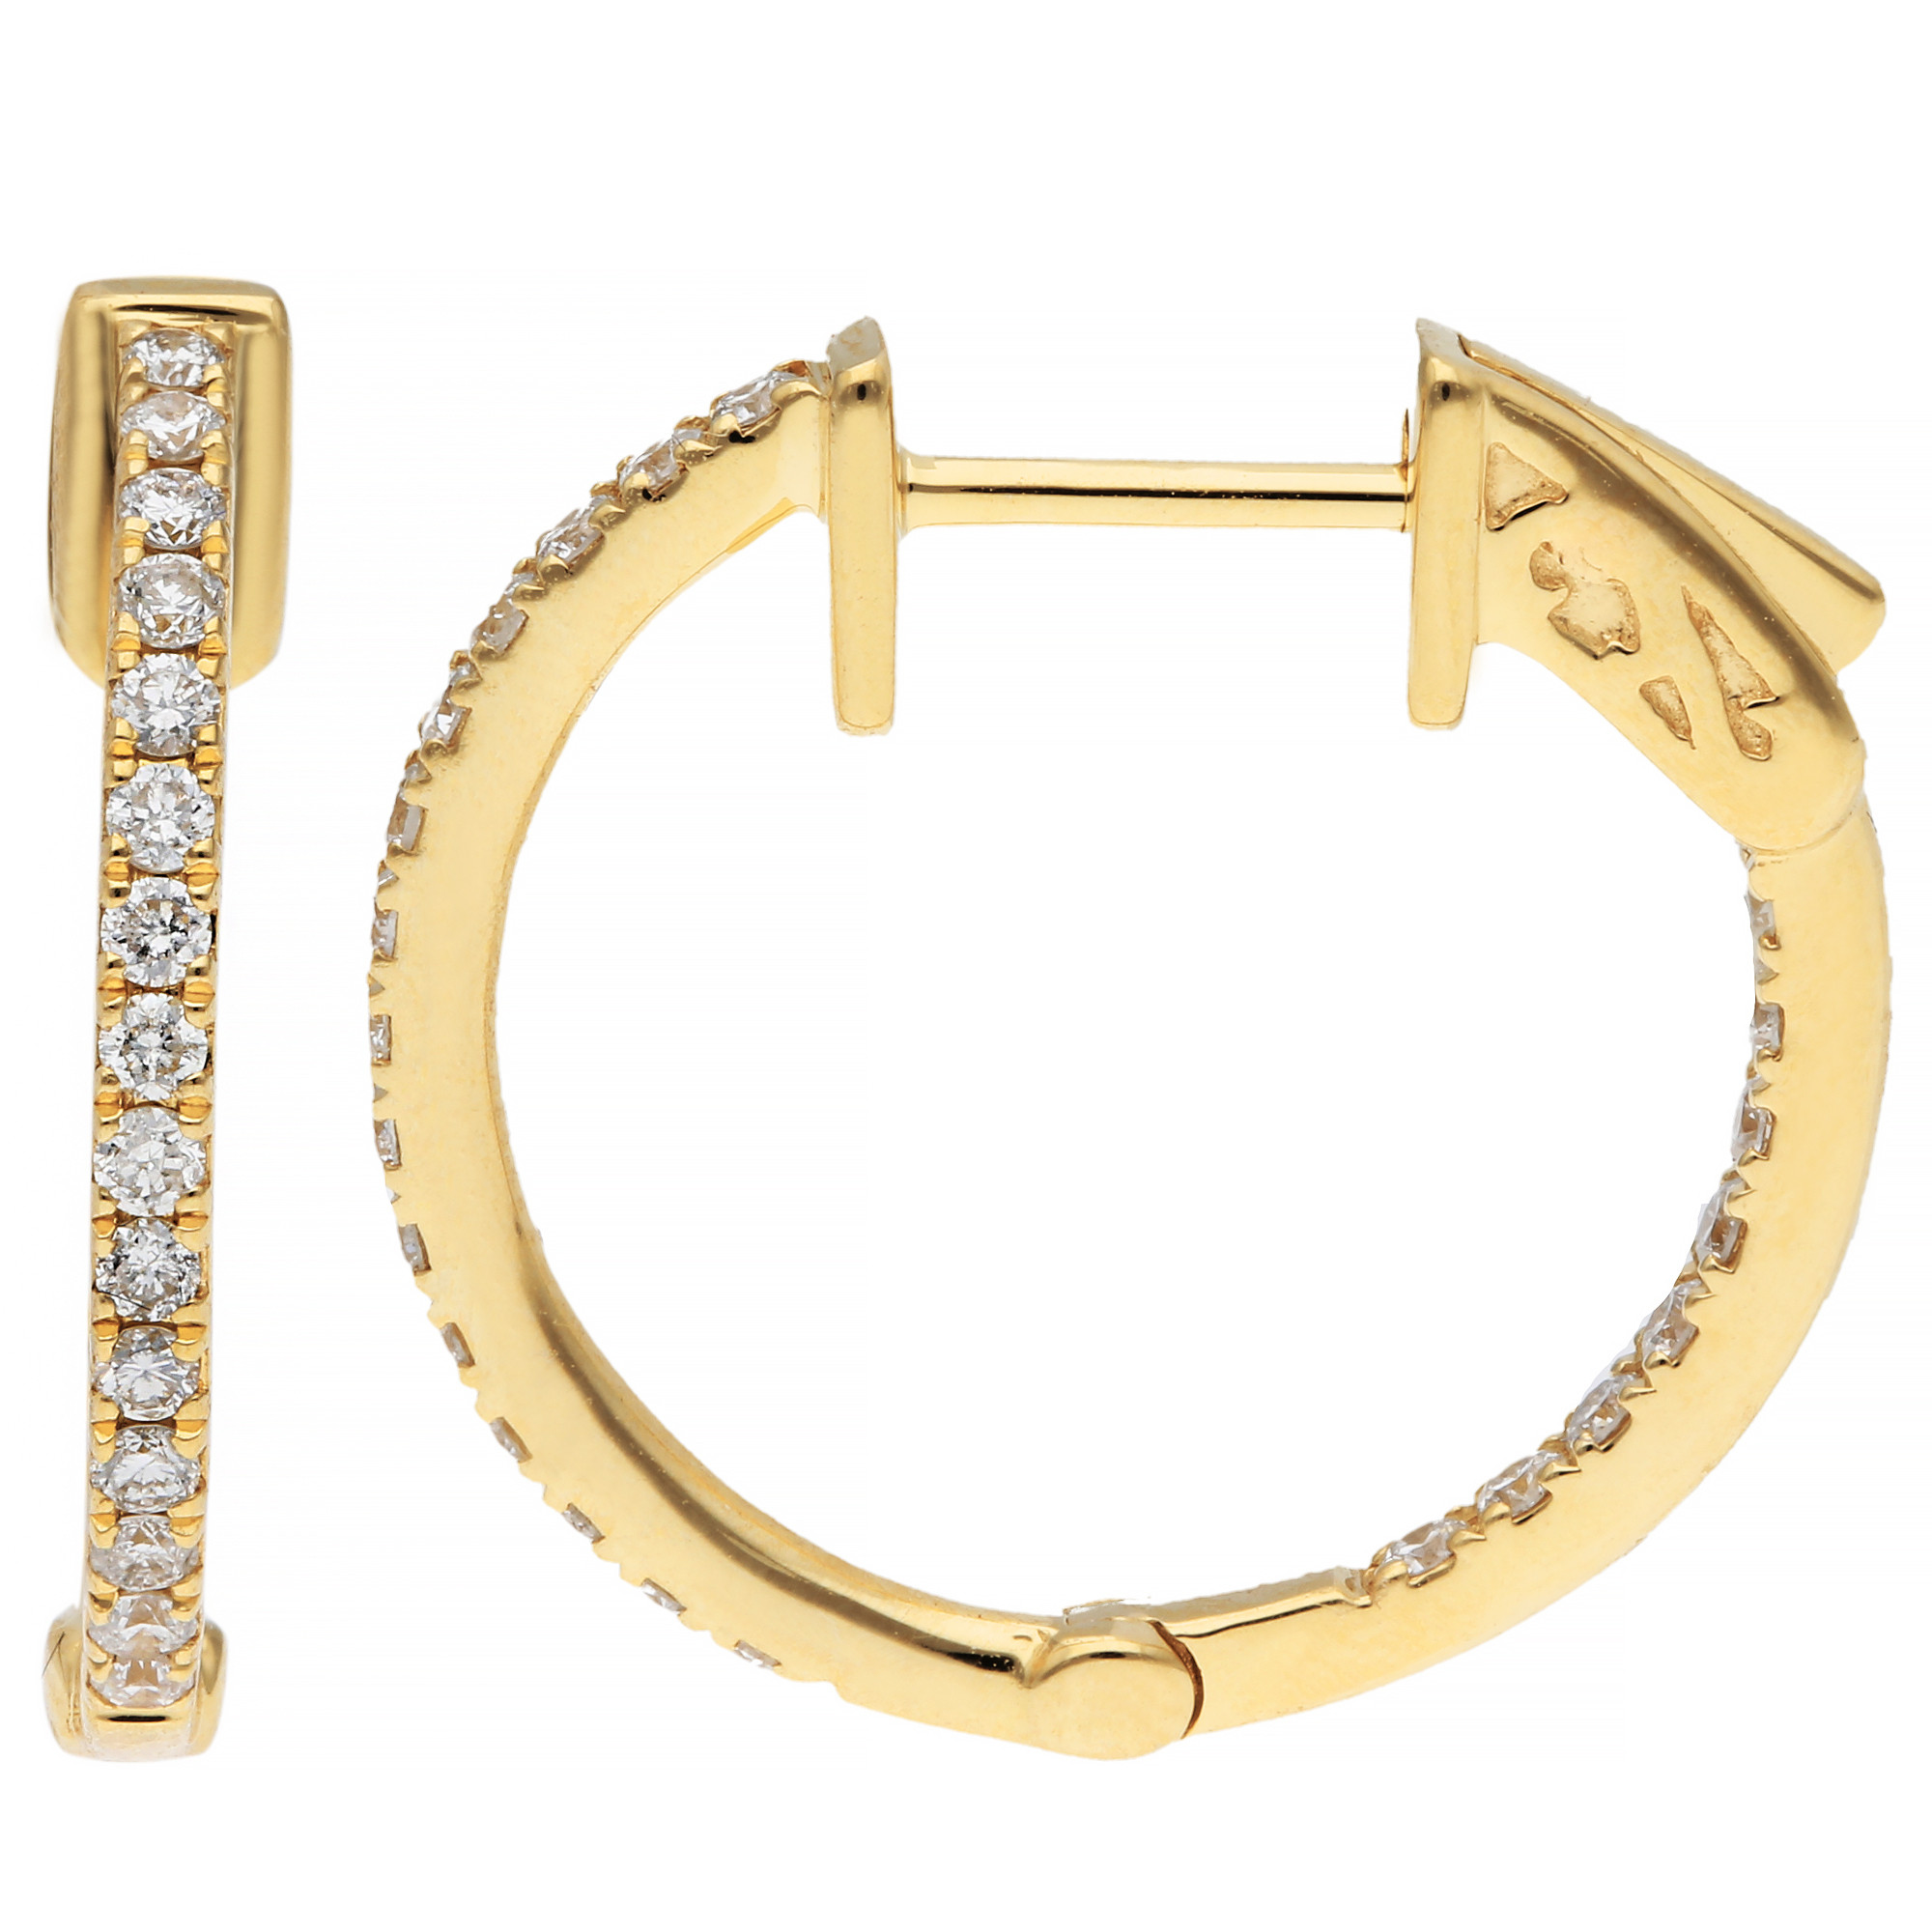 18ct Yellow Gold 17mm Diamond Hinged Hoop Earrings | Buy Online | Free ...